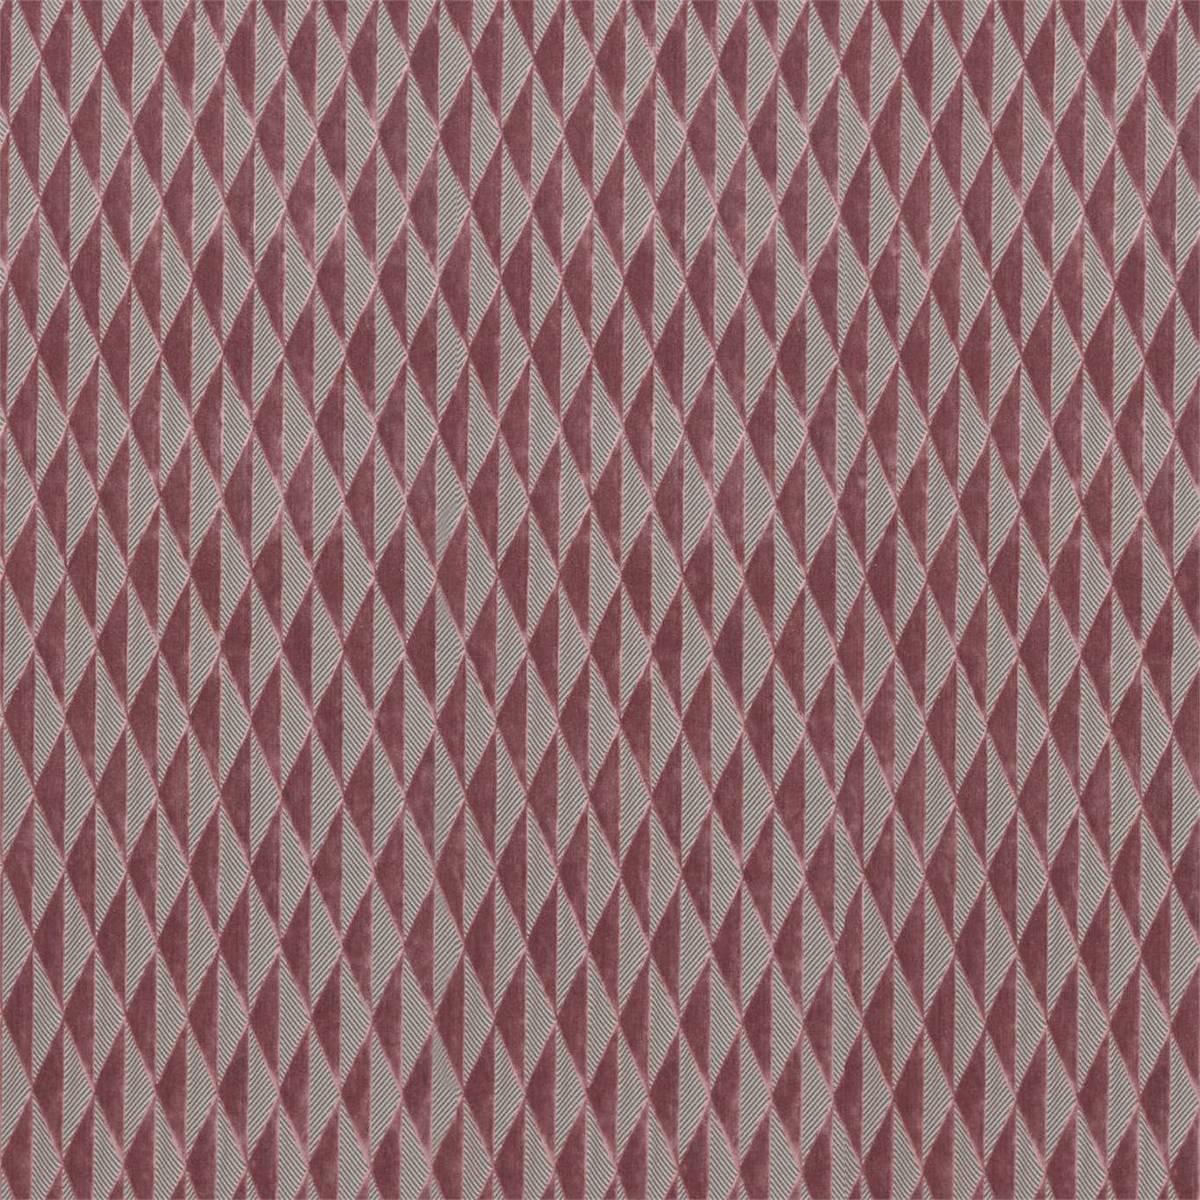 Irradiant Rose Quartz Fabric by Harlequin